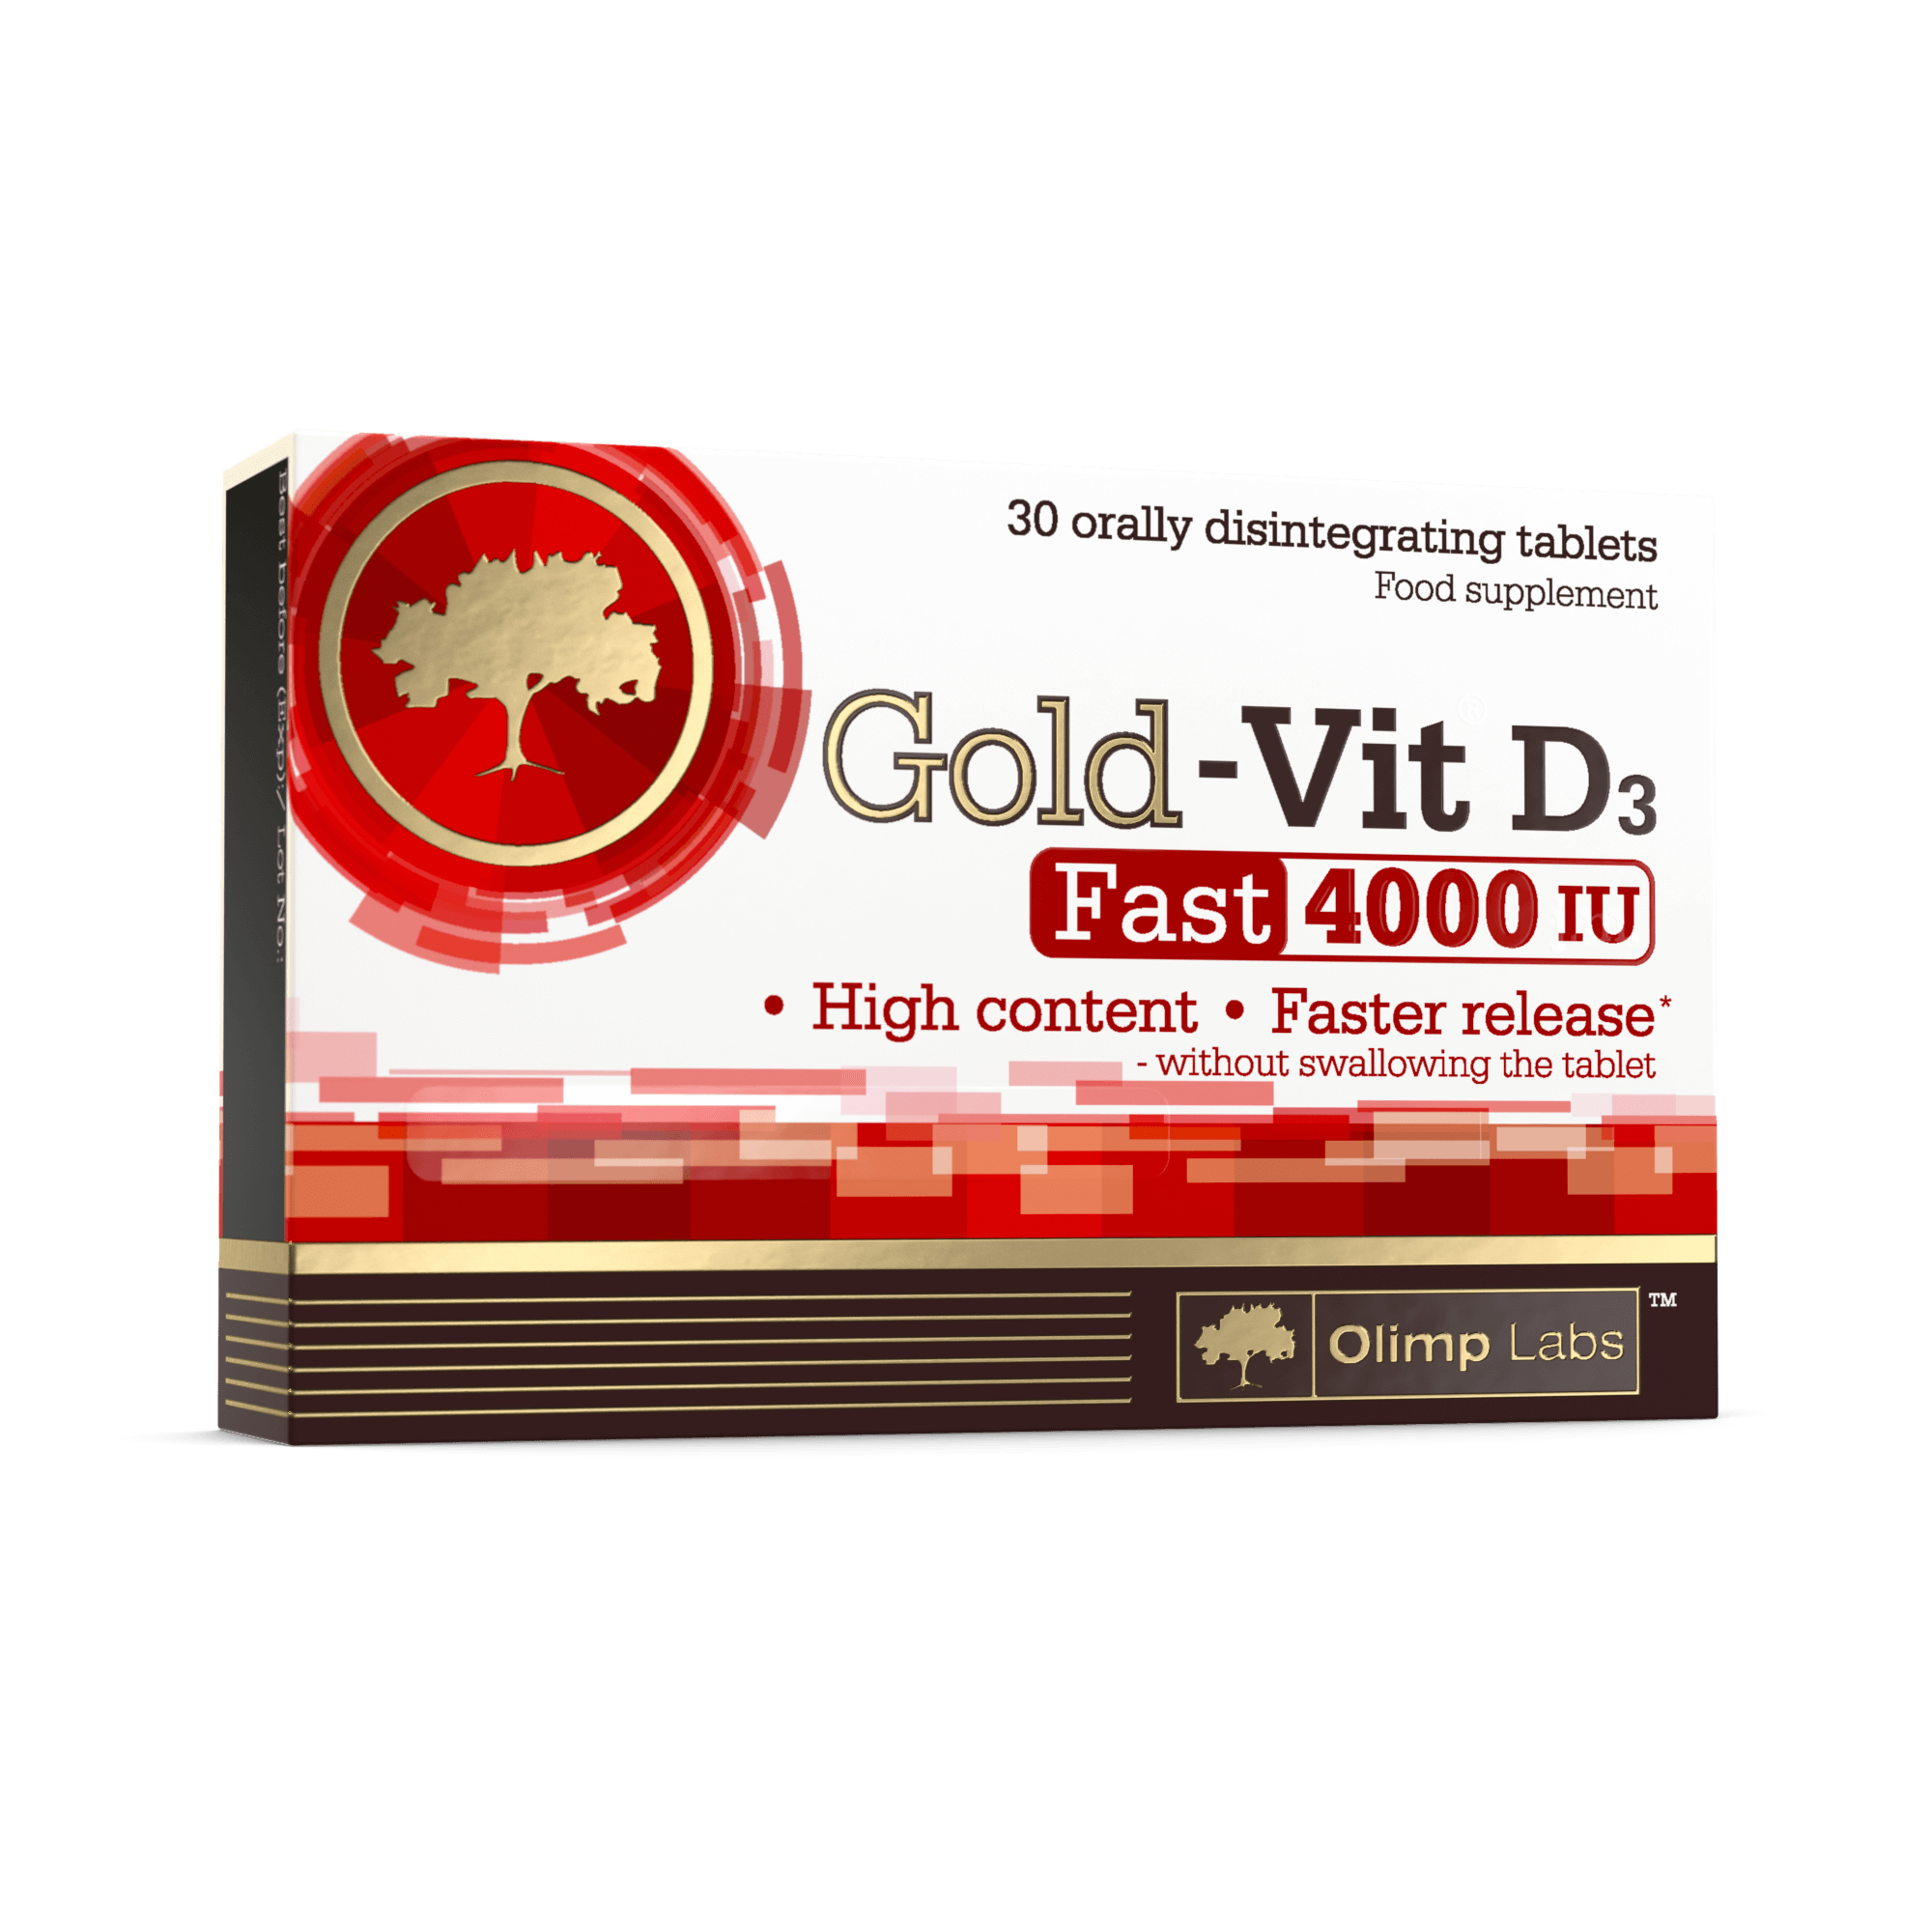 Gold-Vit D3 Fast 400